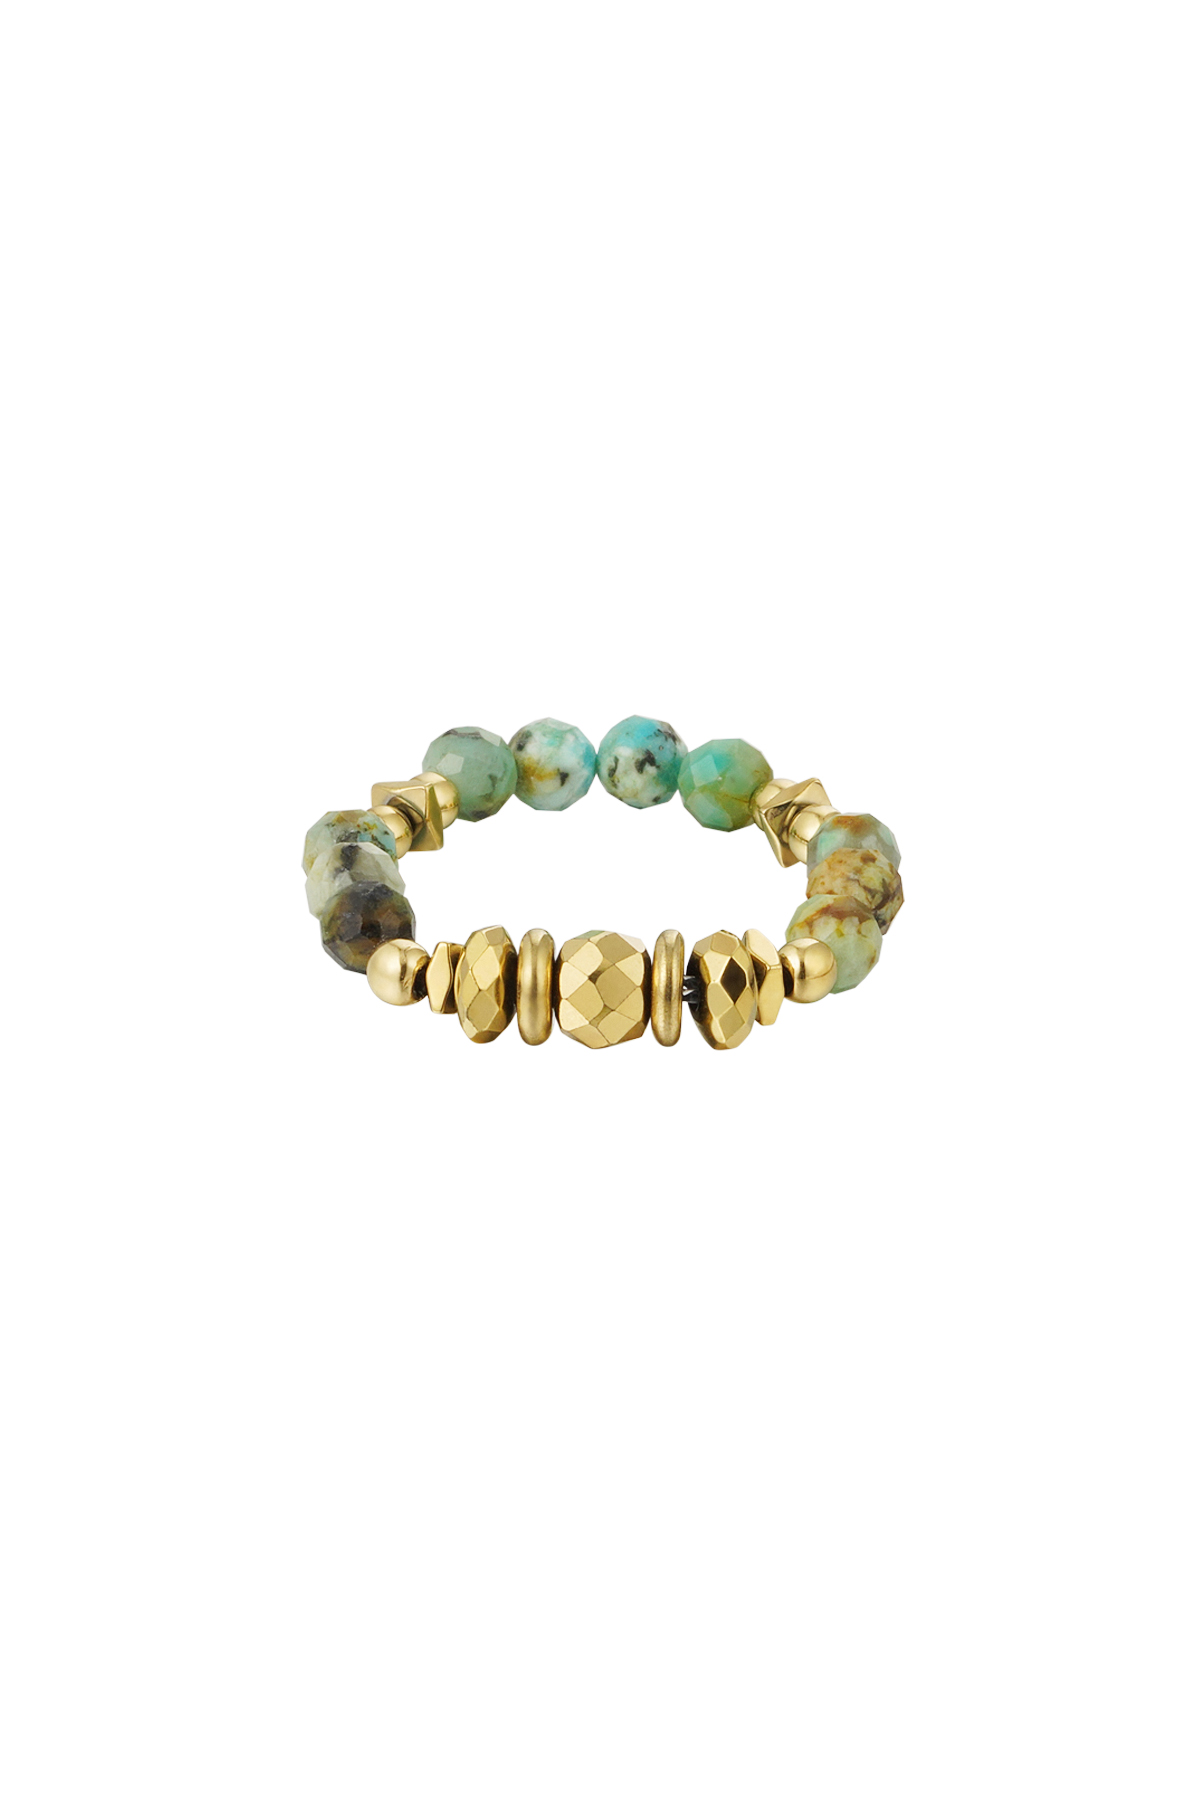 Yüzük taşları - Doğal taş koleksiyonu - altın/yeşil Green & Gold Stone One size h5 